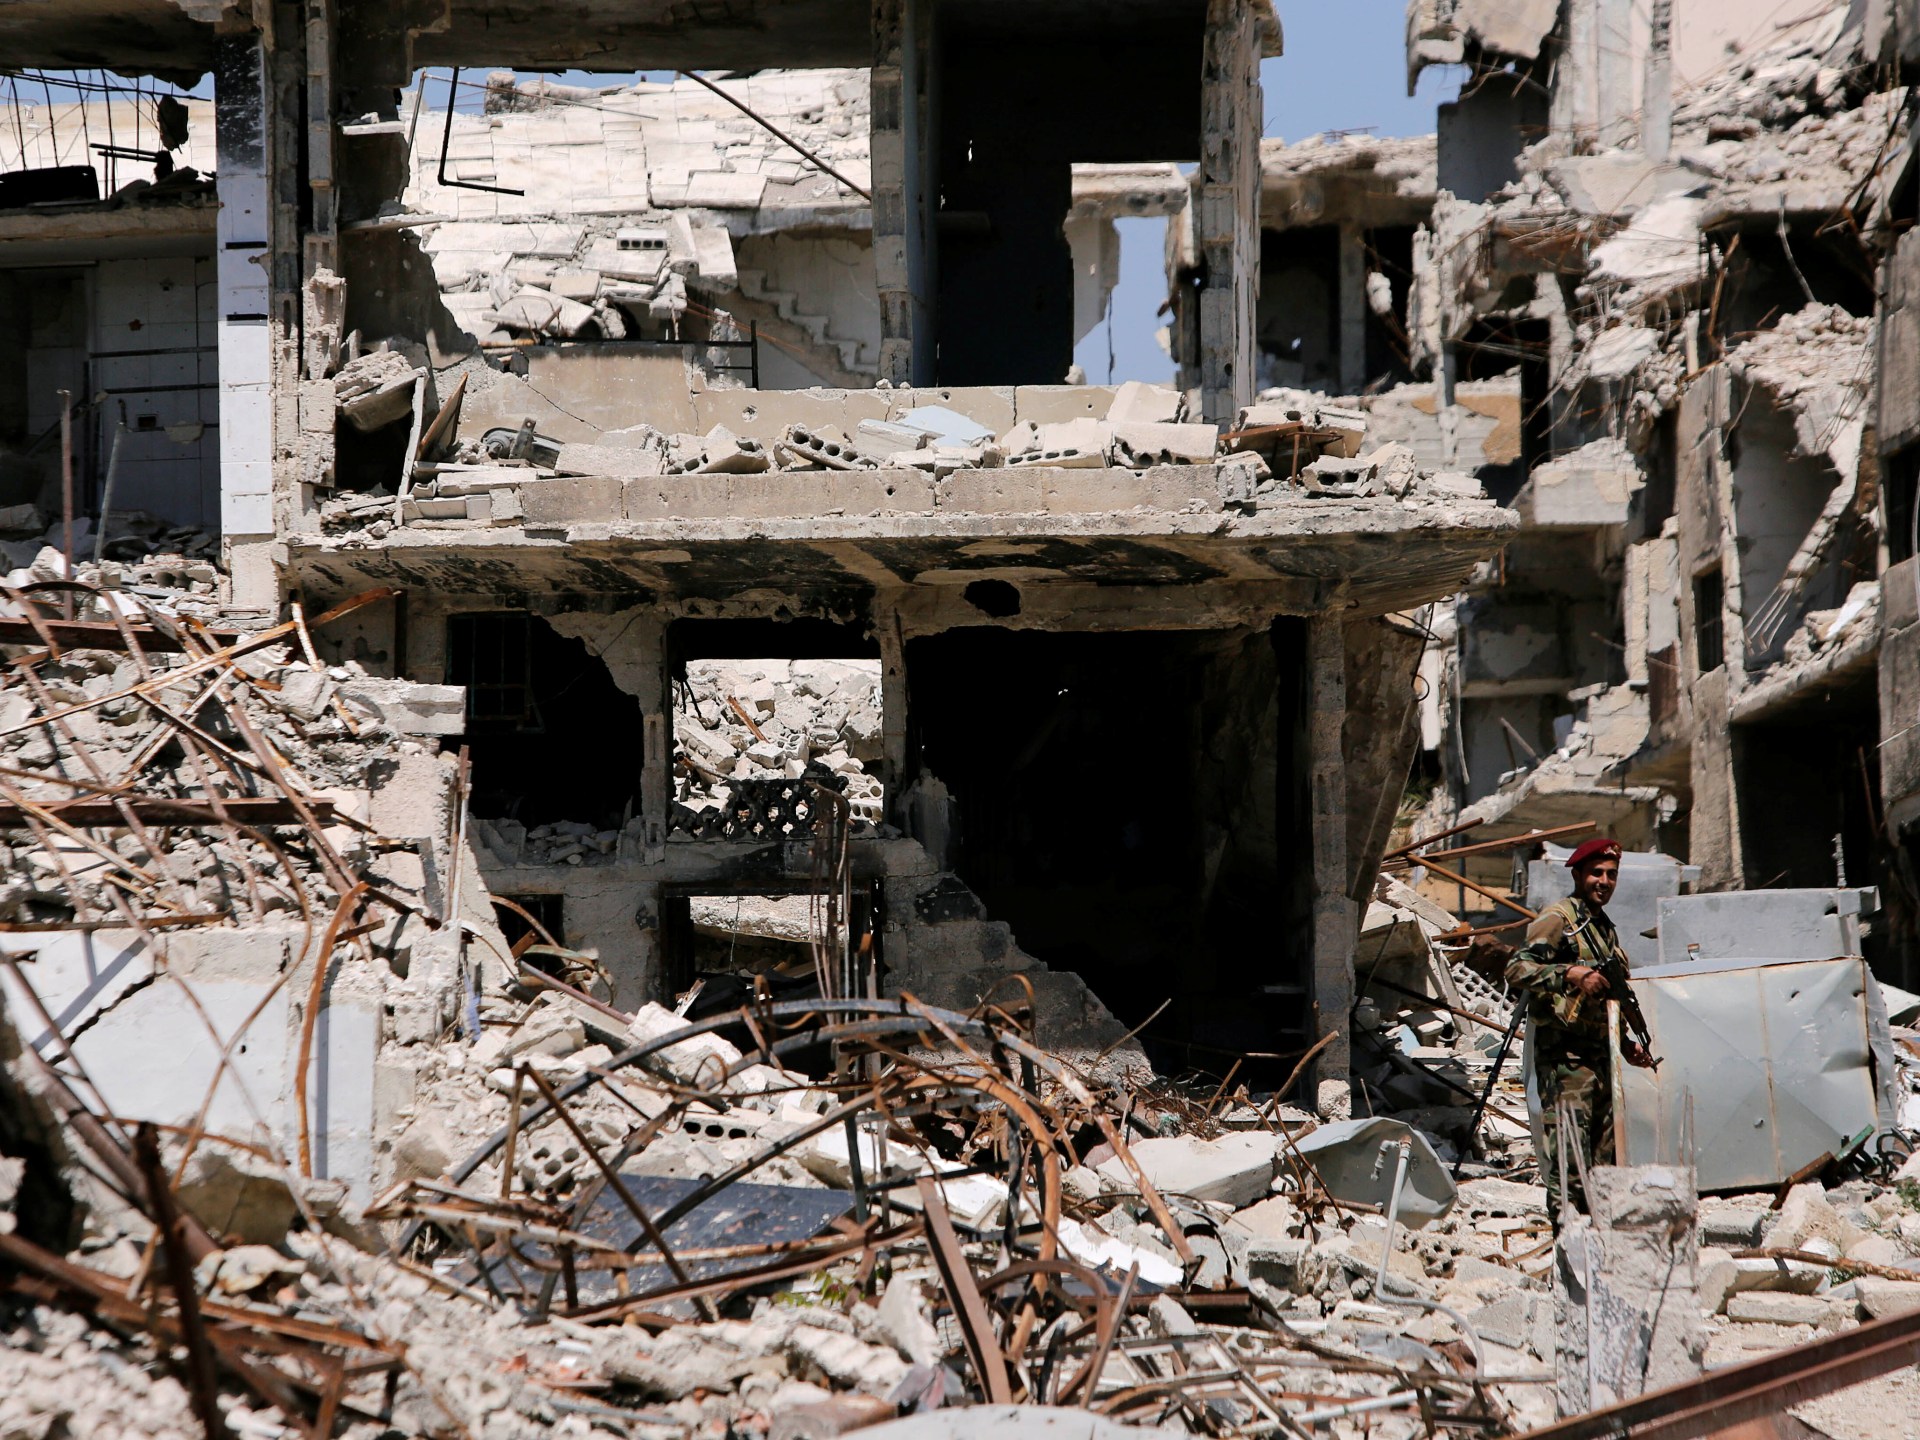 Prancis akan mengadili pejabat rezim Suriah atas kejahatan terhadap kemanusiaan |  Berita Kejahatan terhadap Kemanusiaan